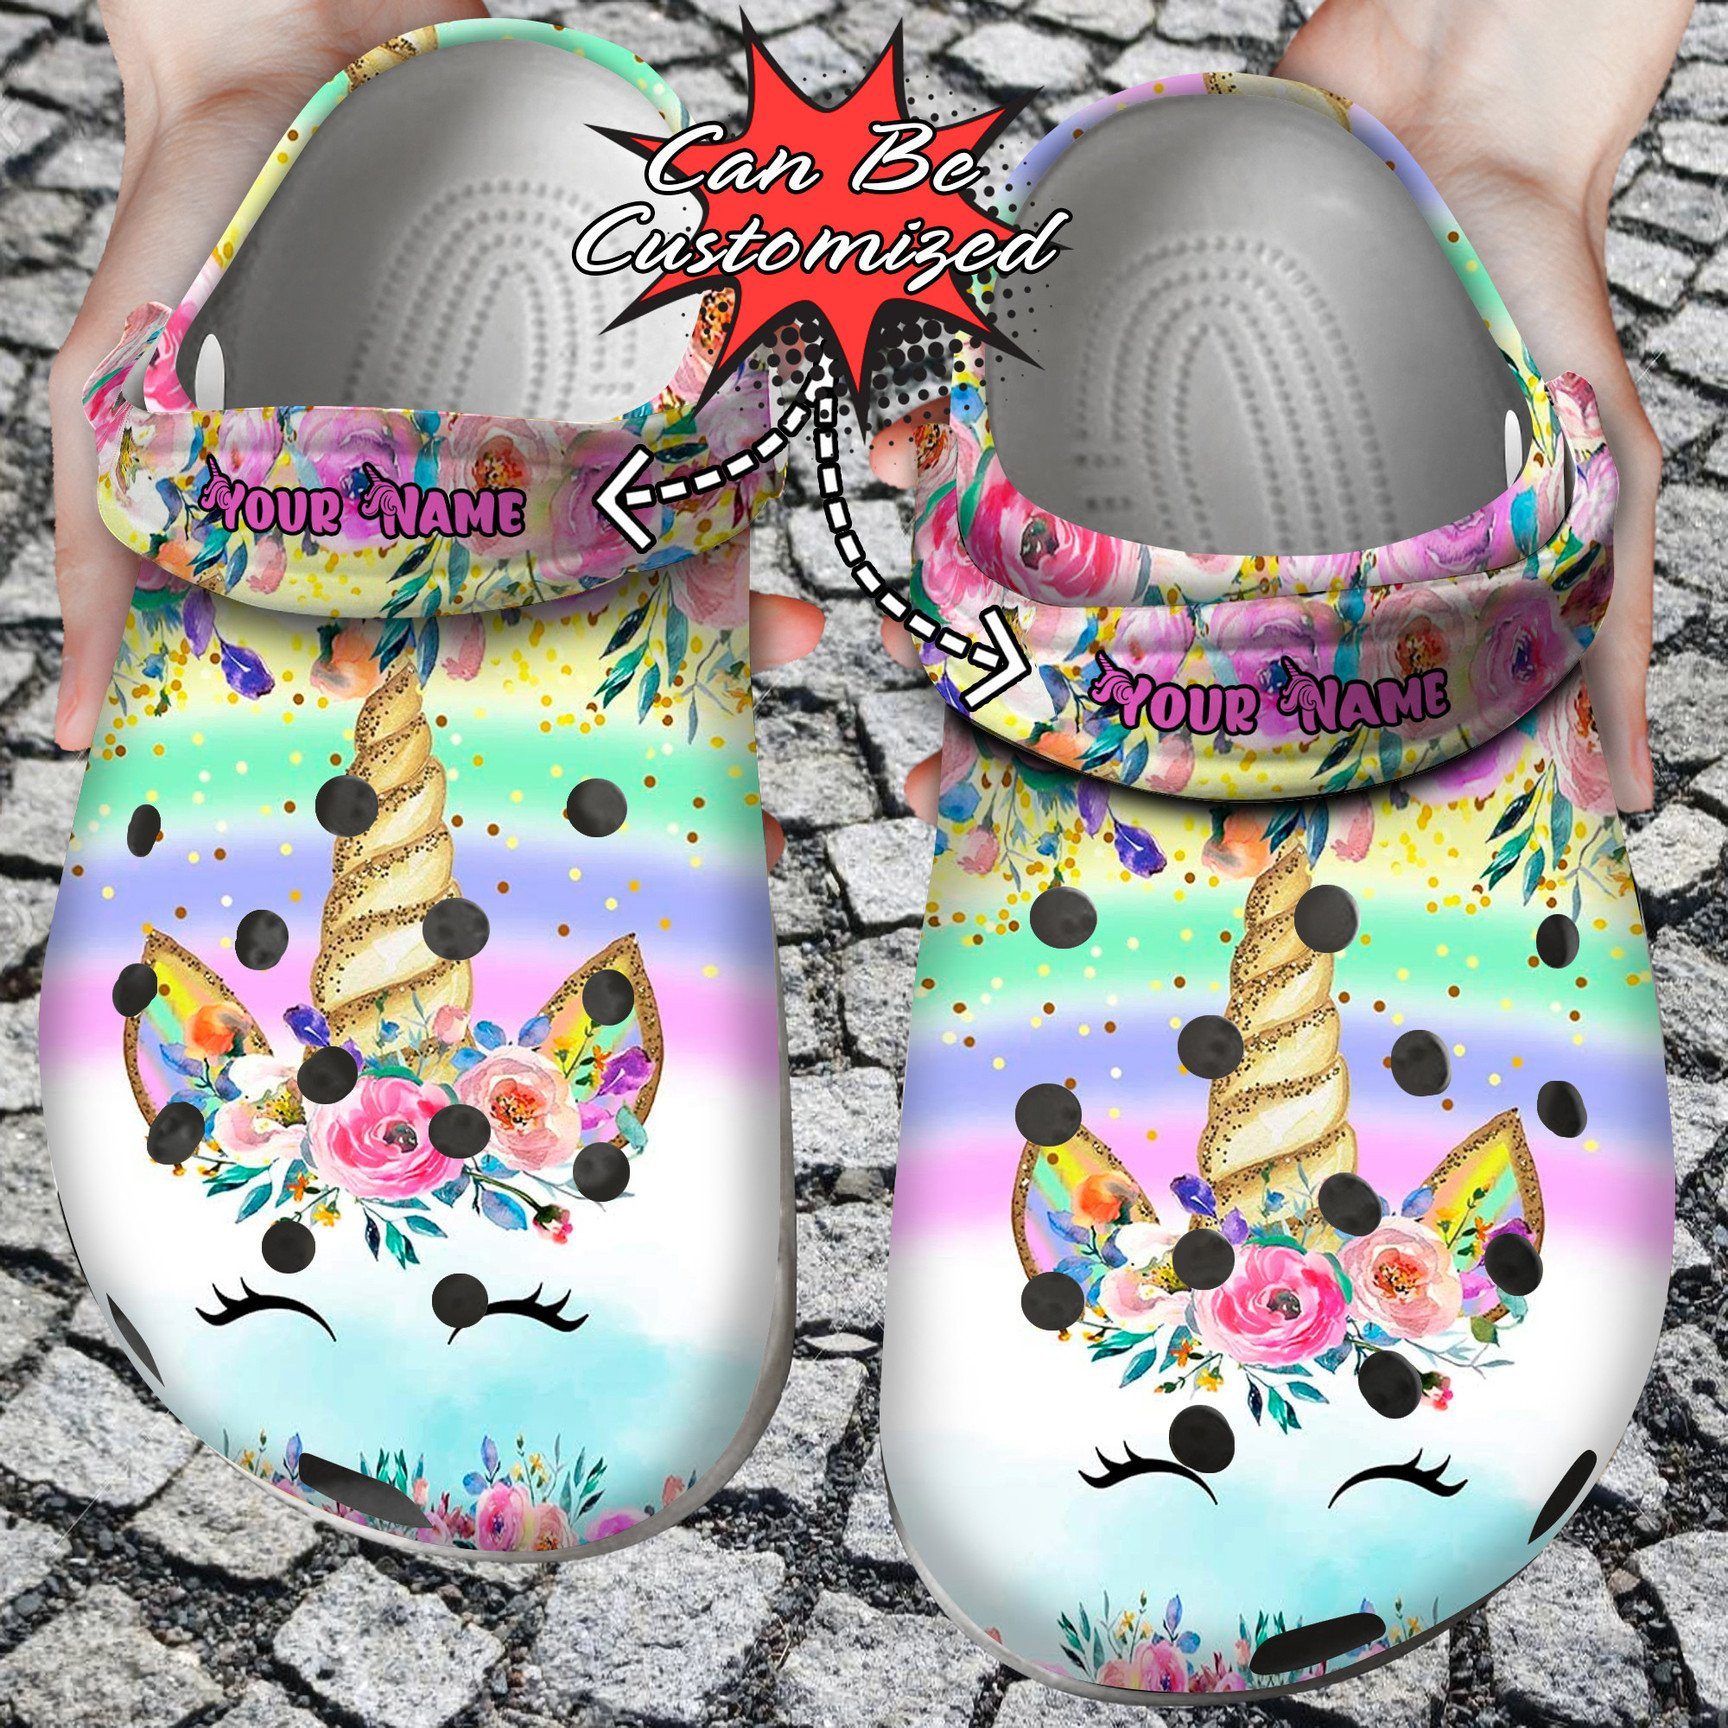 Personalized Colorful Glitter Unicorn Crocs Clog Shoes Custom Crocs